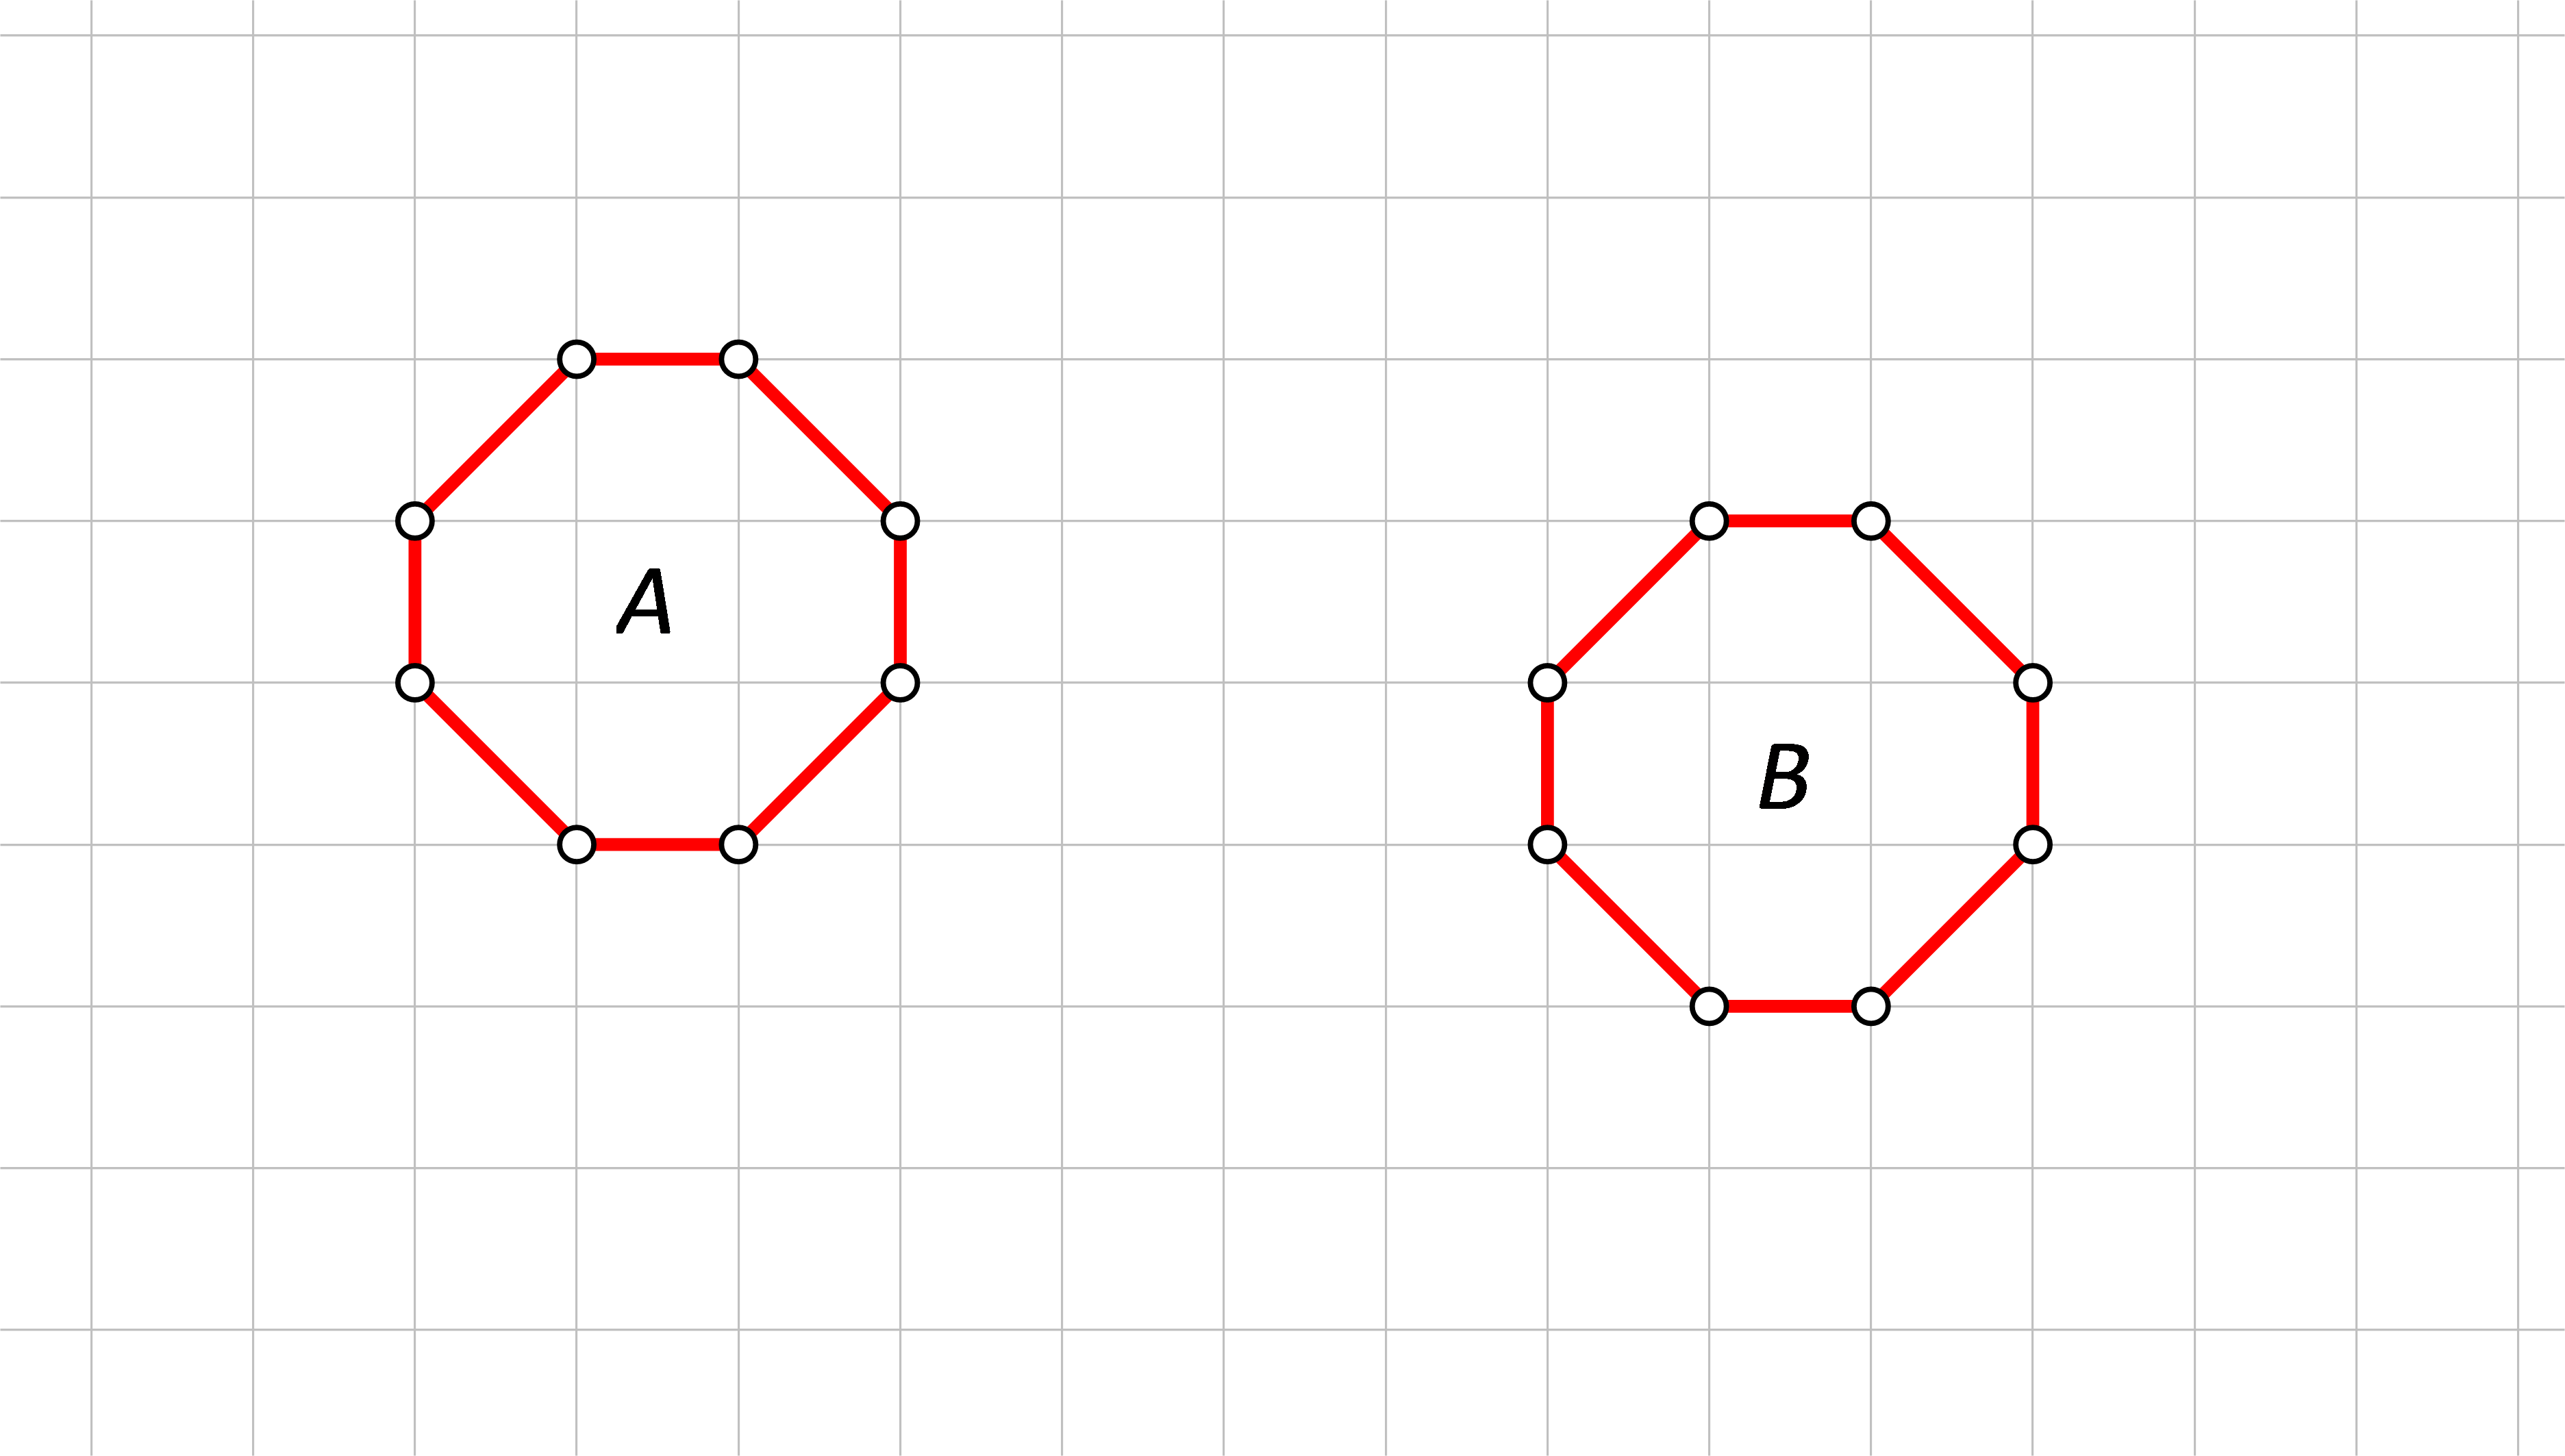 Slike prikazuju dva lika u mreži kvadratića.